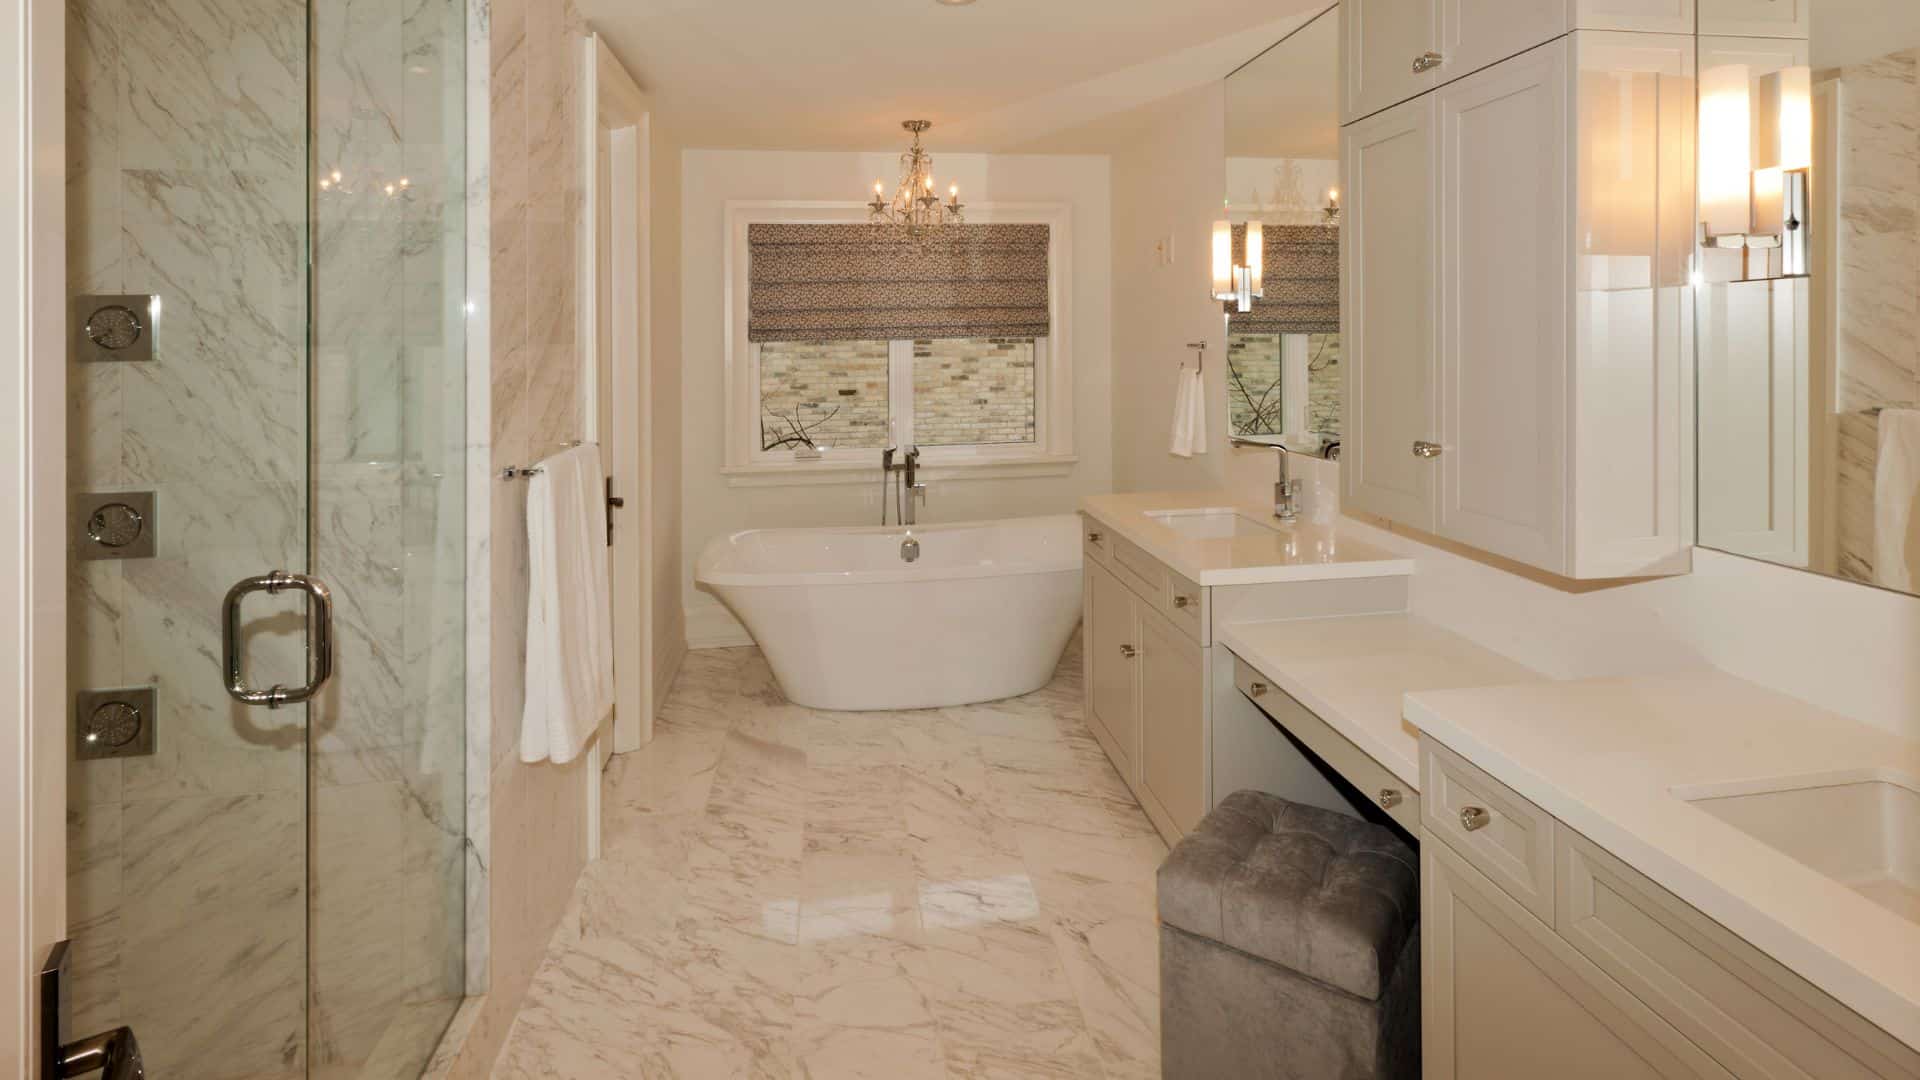 Elegant cream bathroom with cream bathroom cabinets, bath tub and a shower